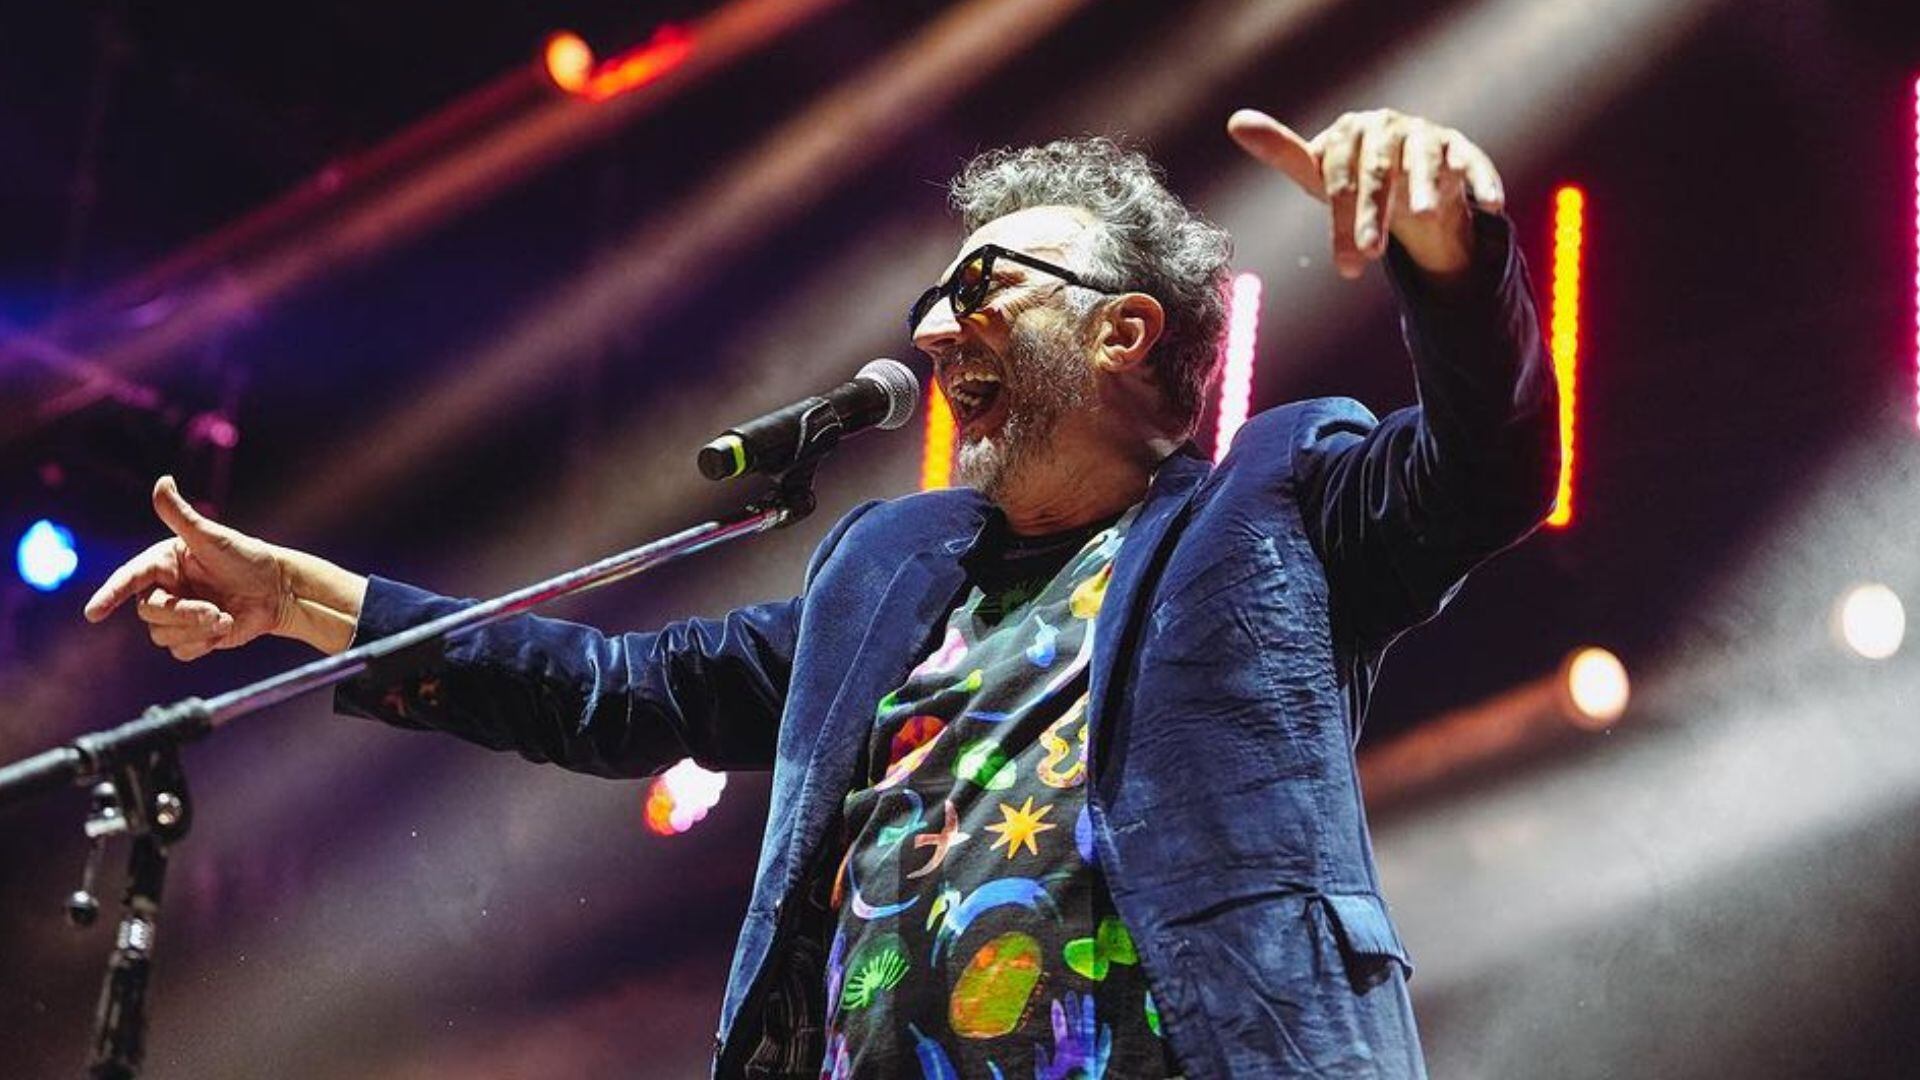 El cantante argentino Fito Páez regresa a Perú como parte de su gira 'El amor 30 años después del amor'. Créditos a Santiago Sacristan